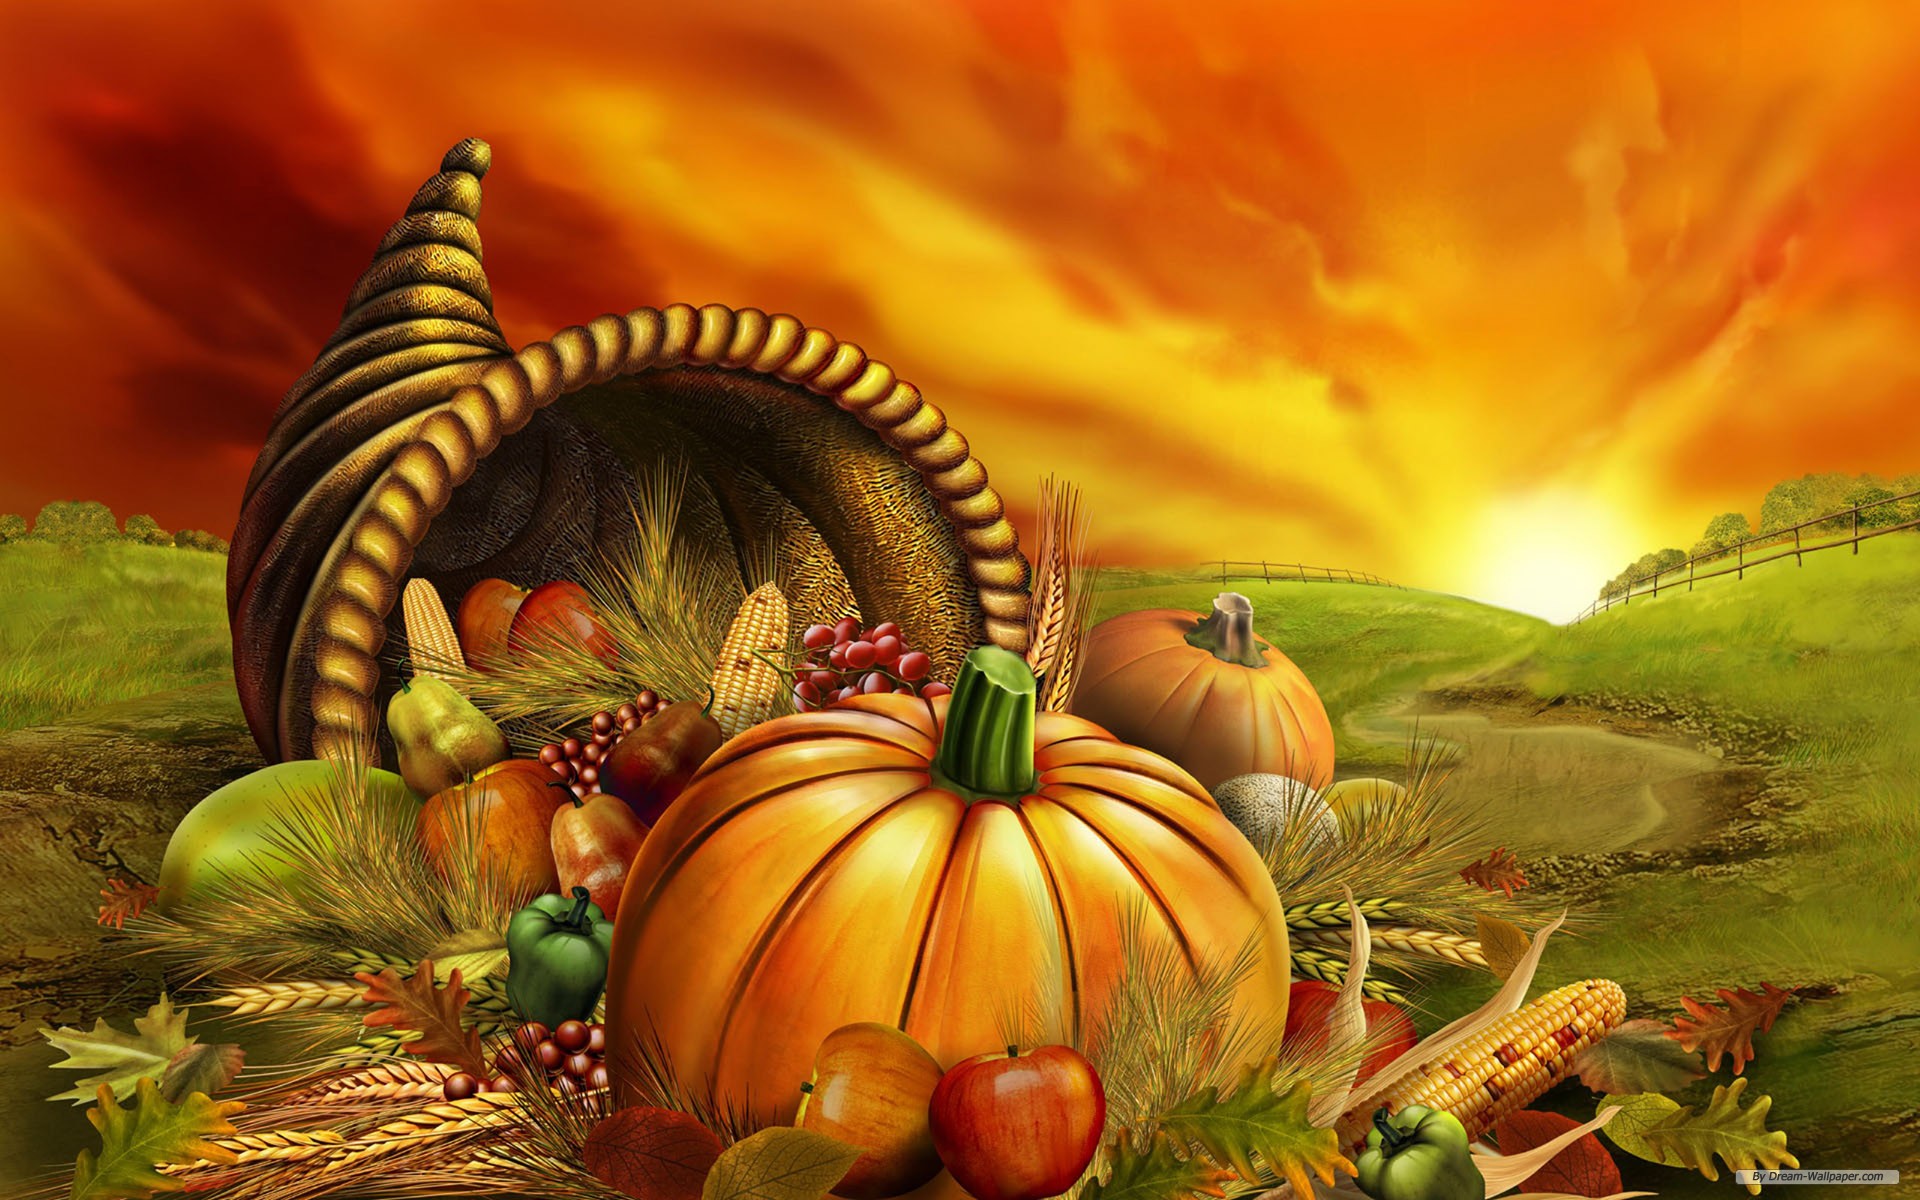 Wallpaperuniversity Thanksgiving Pumpkin And Fall Desktop